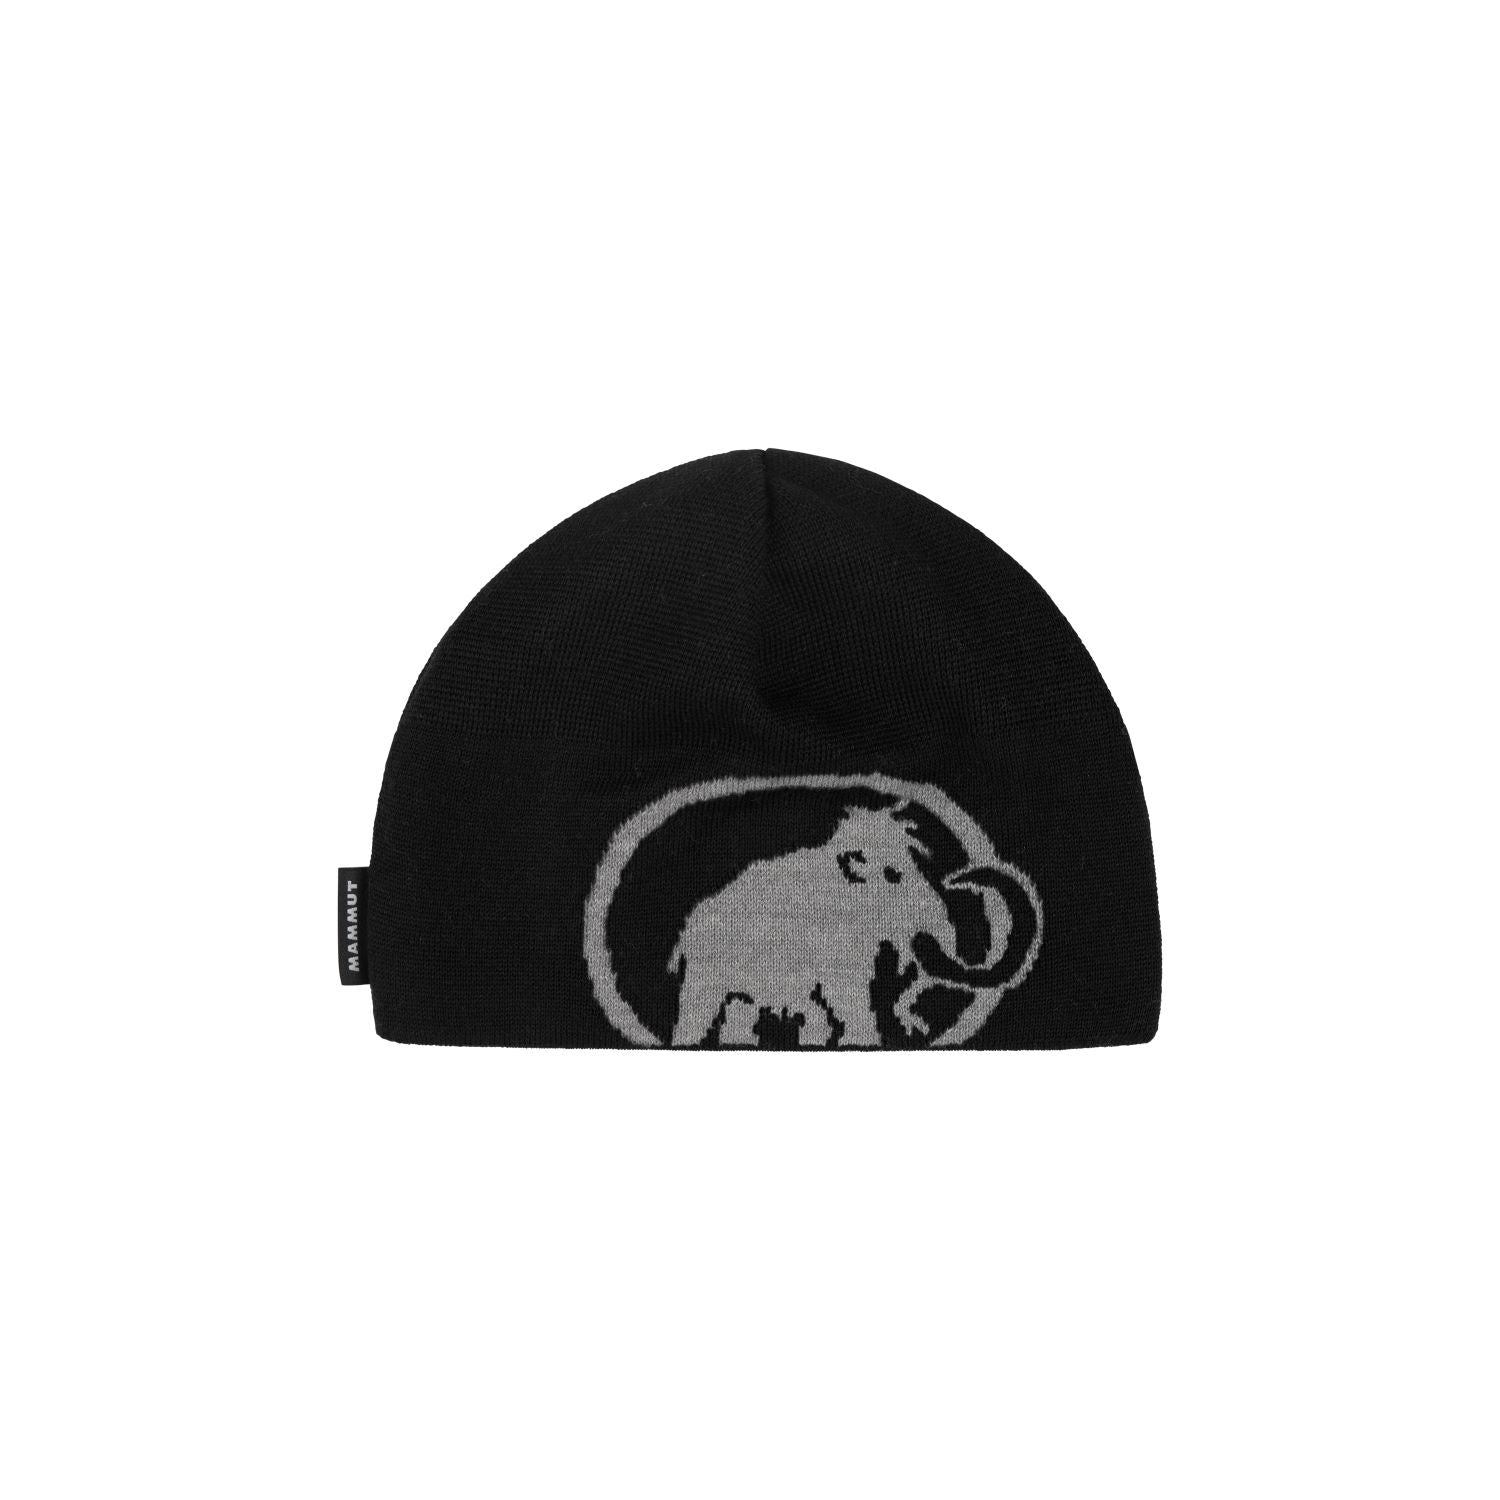 Cepure Mammut Tweak Beanie Black-Steel